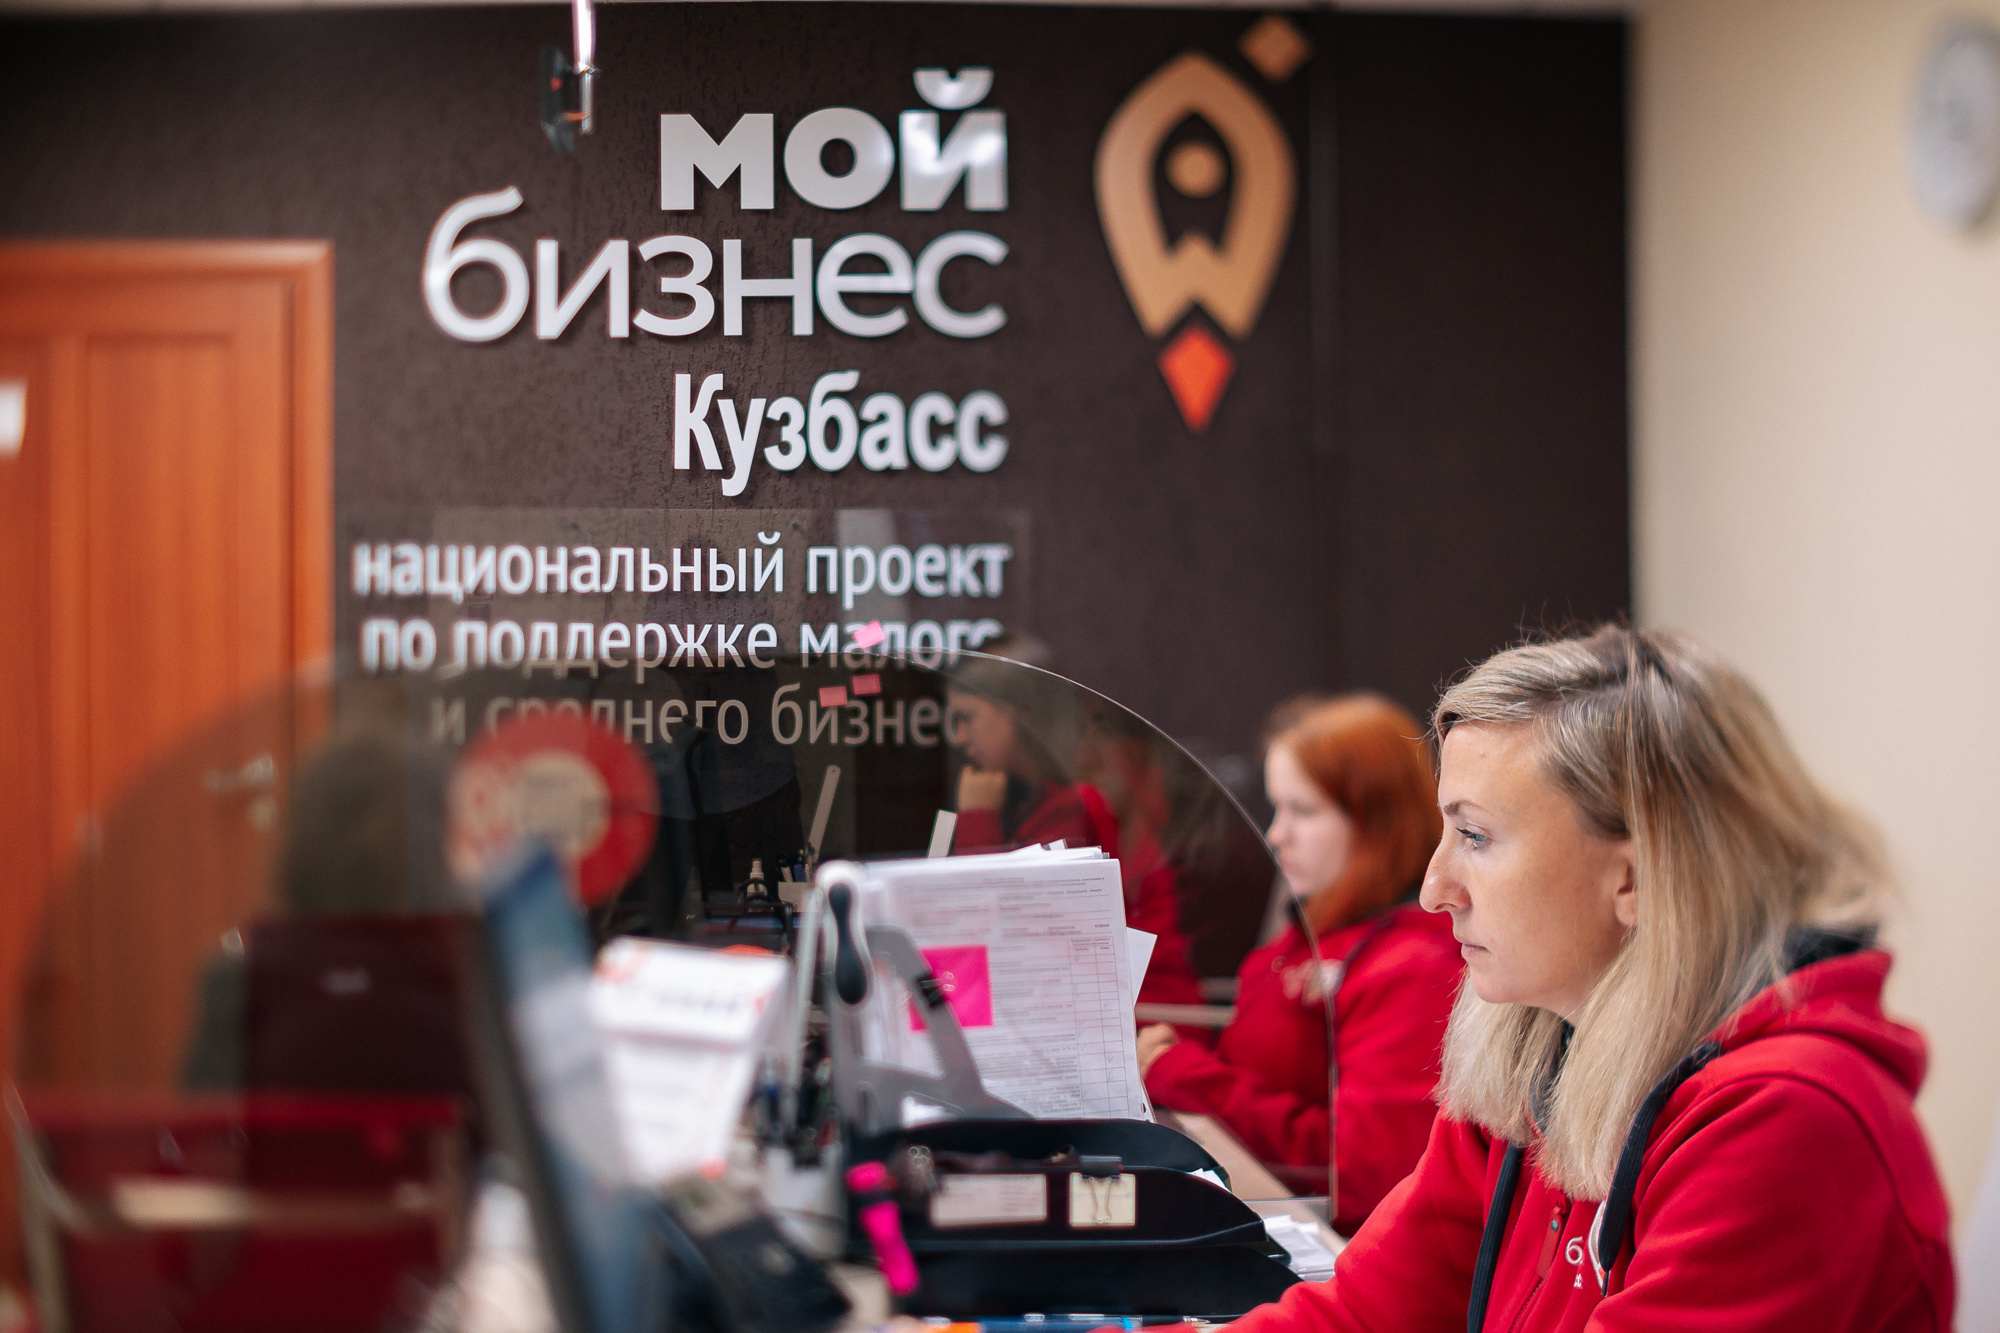 Центр кластерного развития центра «Мой бизнес» в Кузбассе уже объединяет более 500 предпринимателей